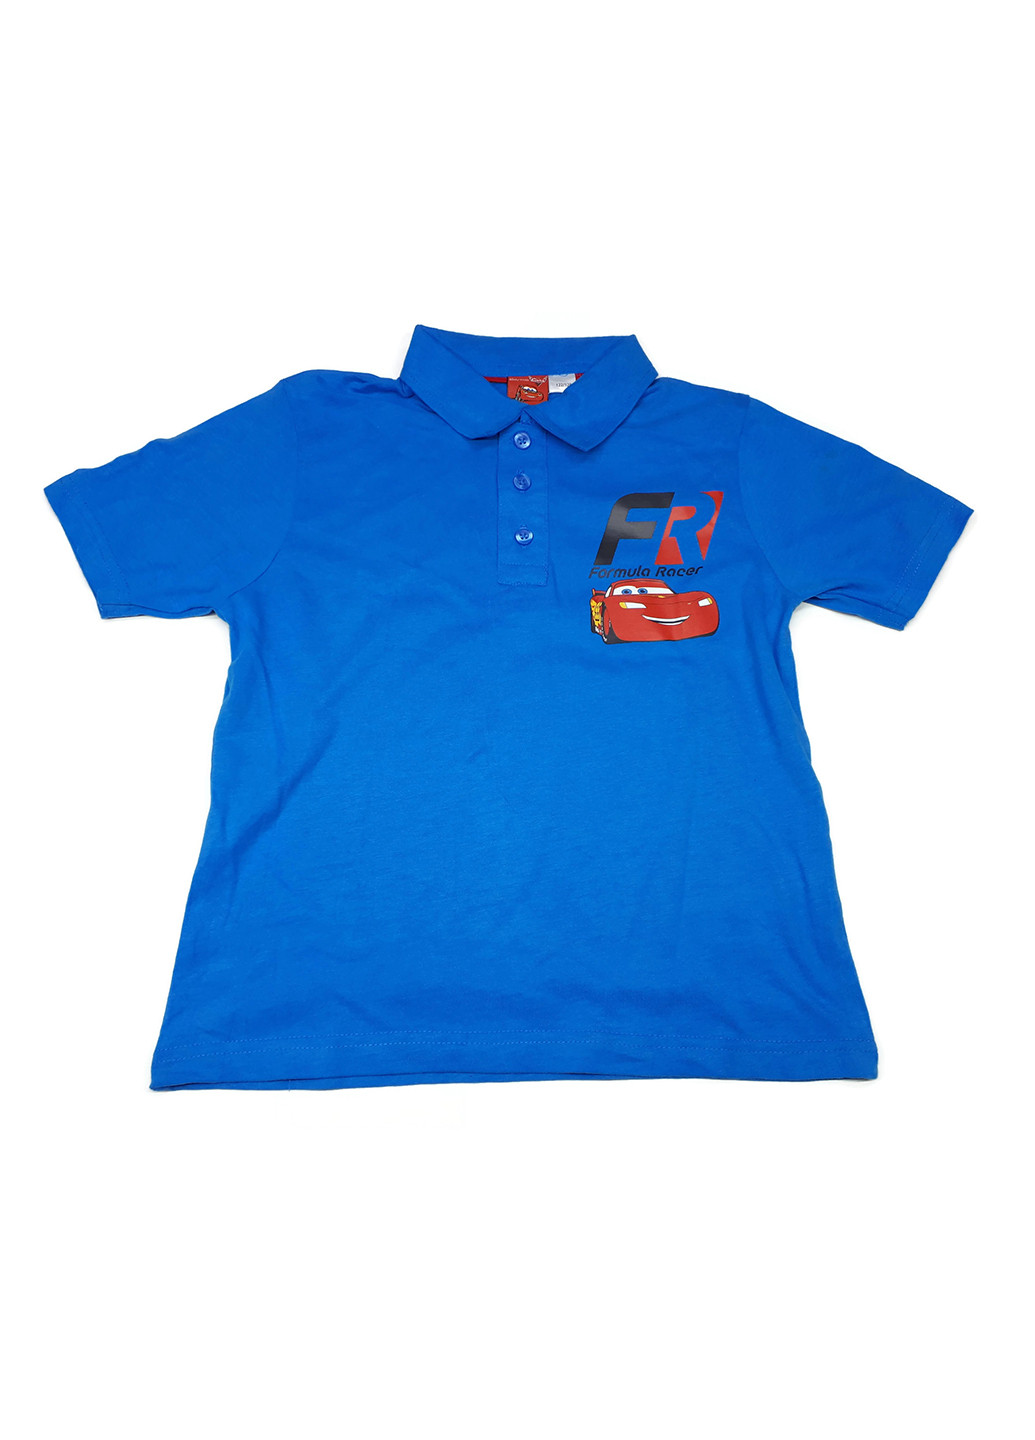 Синяя детская футболка-поло для мальчика Lidl с рисунком